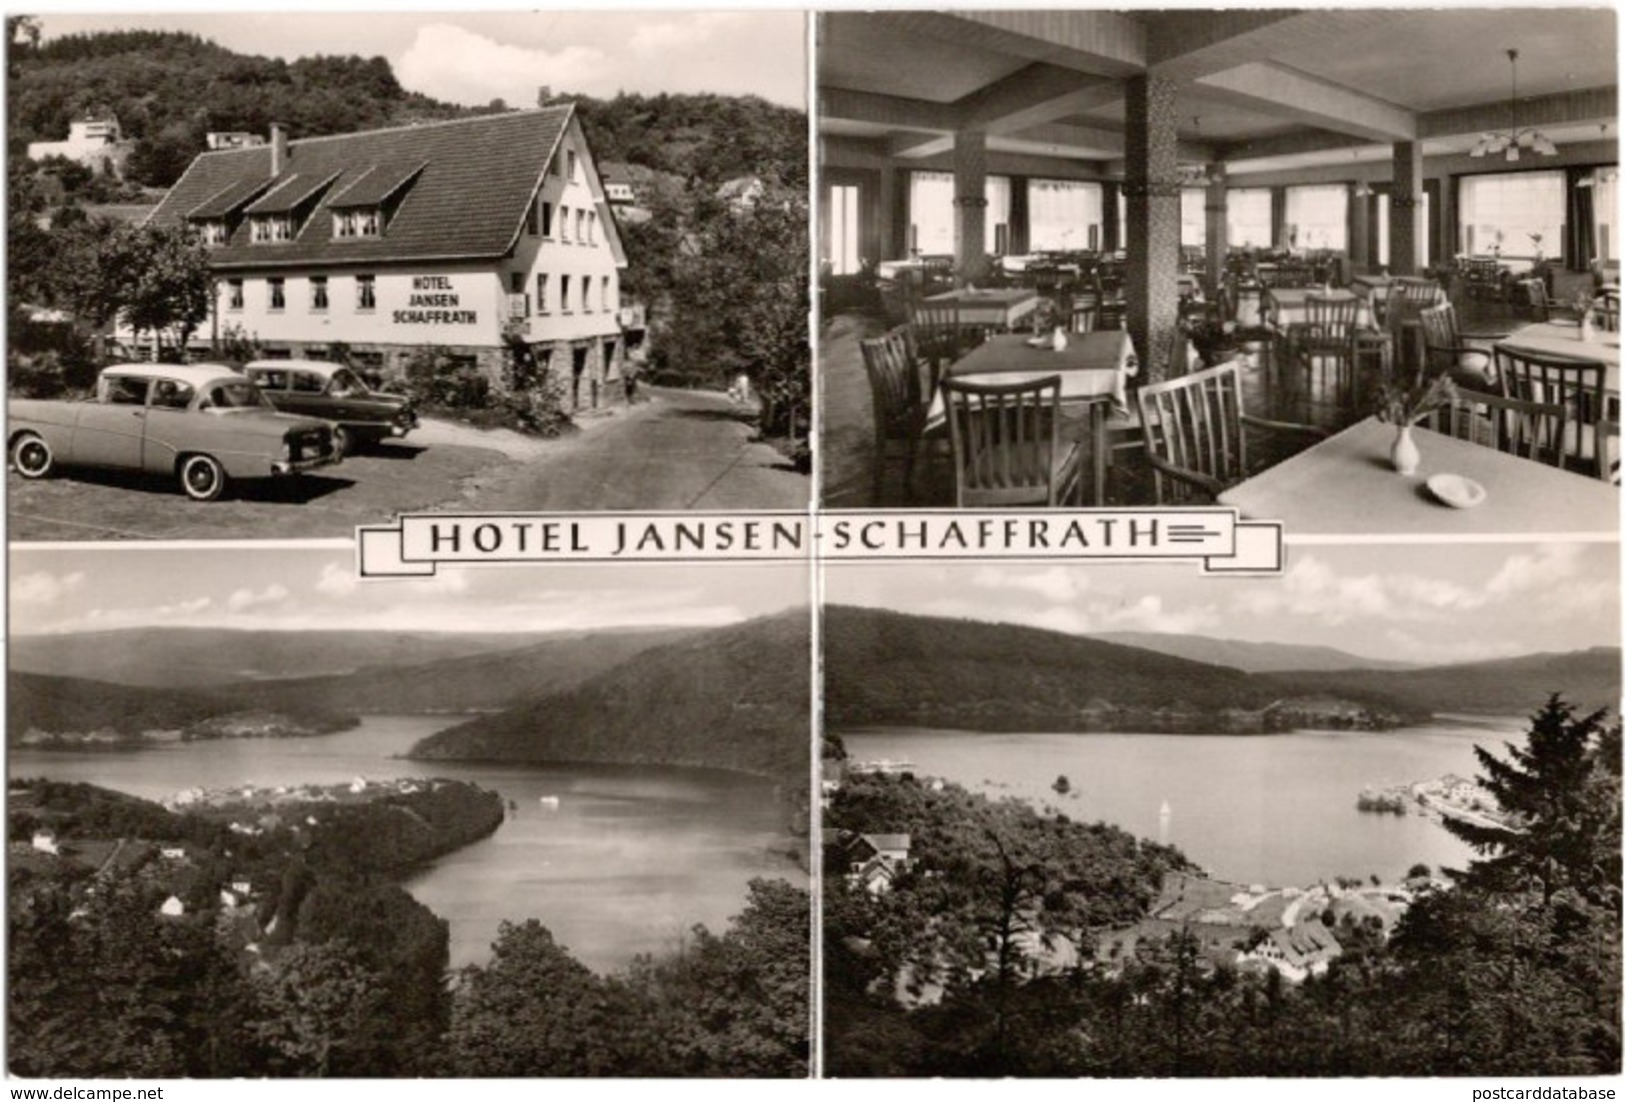 Hotel Jansen Schaffrath - Woffelsbach - & Hotel, Old Cars - Simmerath